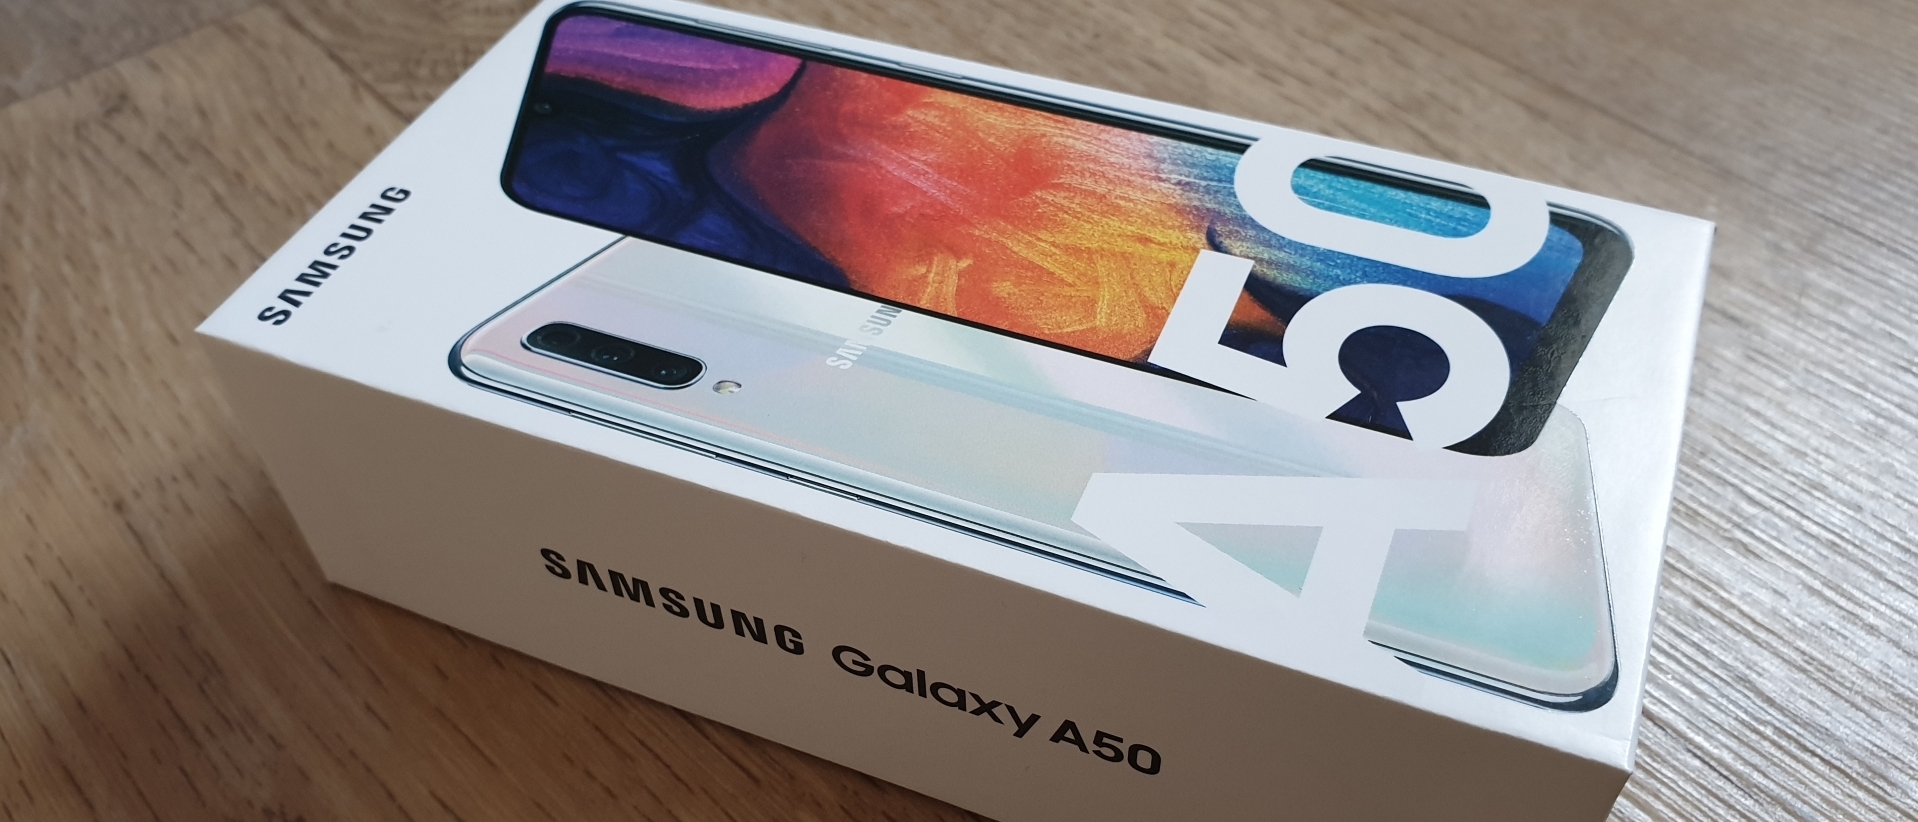 Samsung Galaxy A50 - die neue Mittelklasse